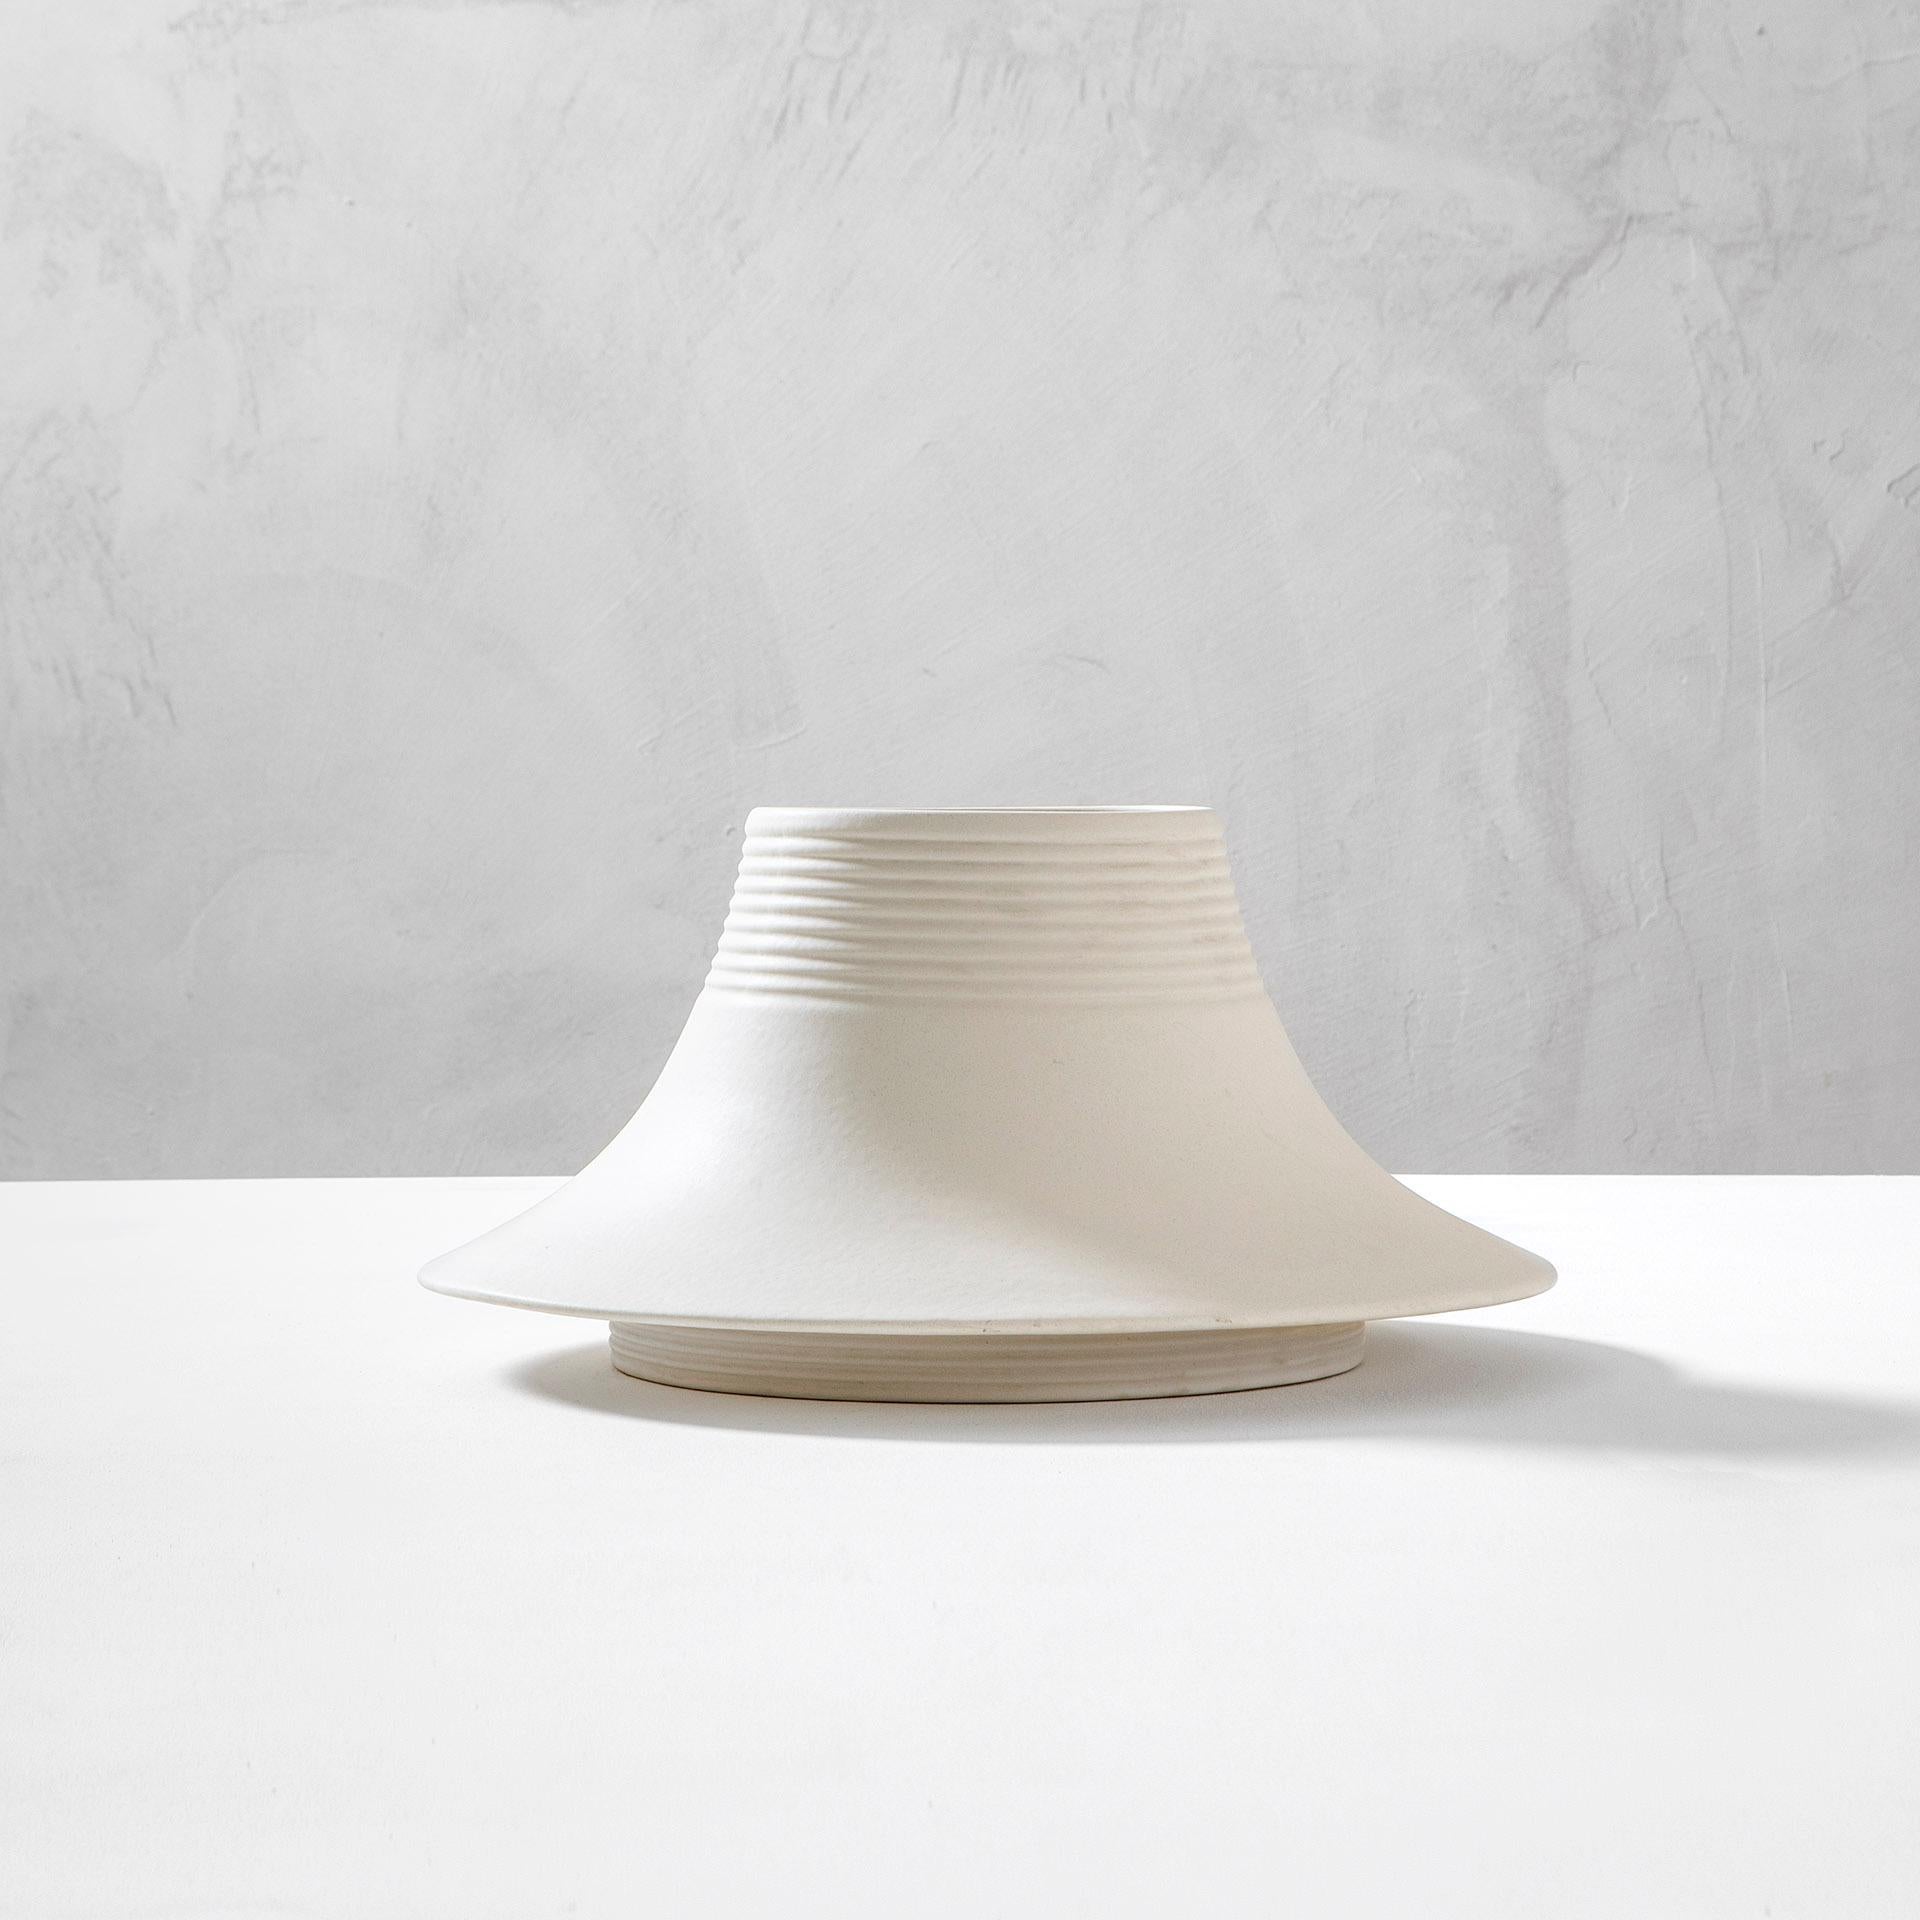 Pièce maîtresse minimale et magnifique conçue par le maître italien Angelo Mangiarotti. Le vase a été conçu à la fin des années 70 pour Gabbianelli et il est entièrement en céramique émaillée. 
Très bon état, entièrement d'origine. Présence de la